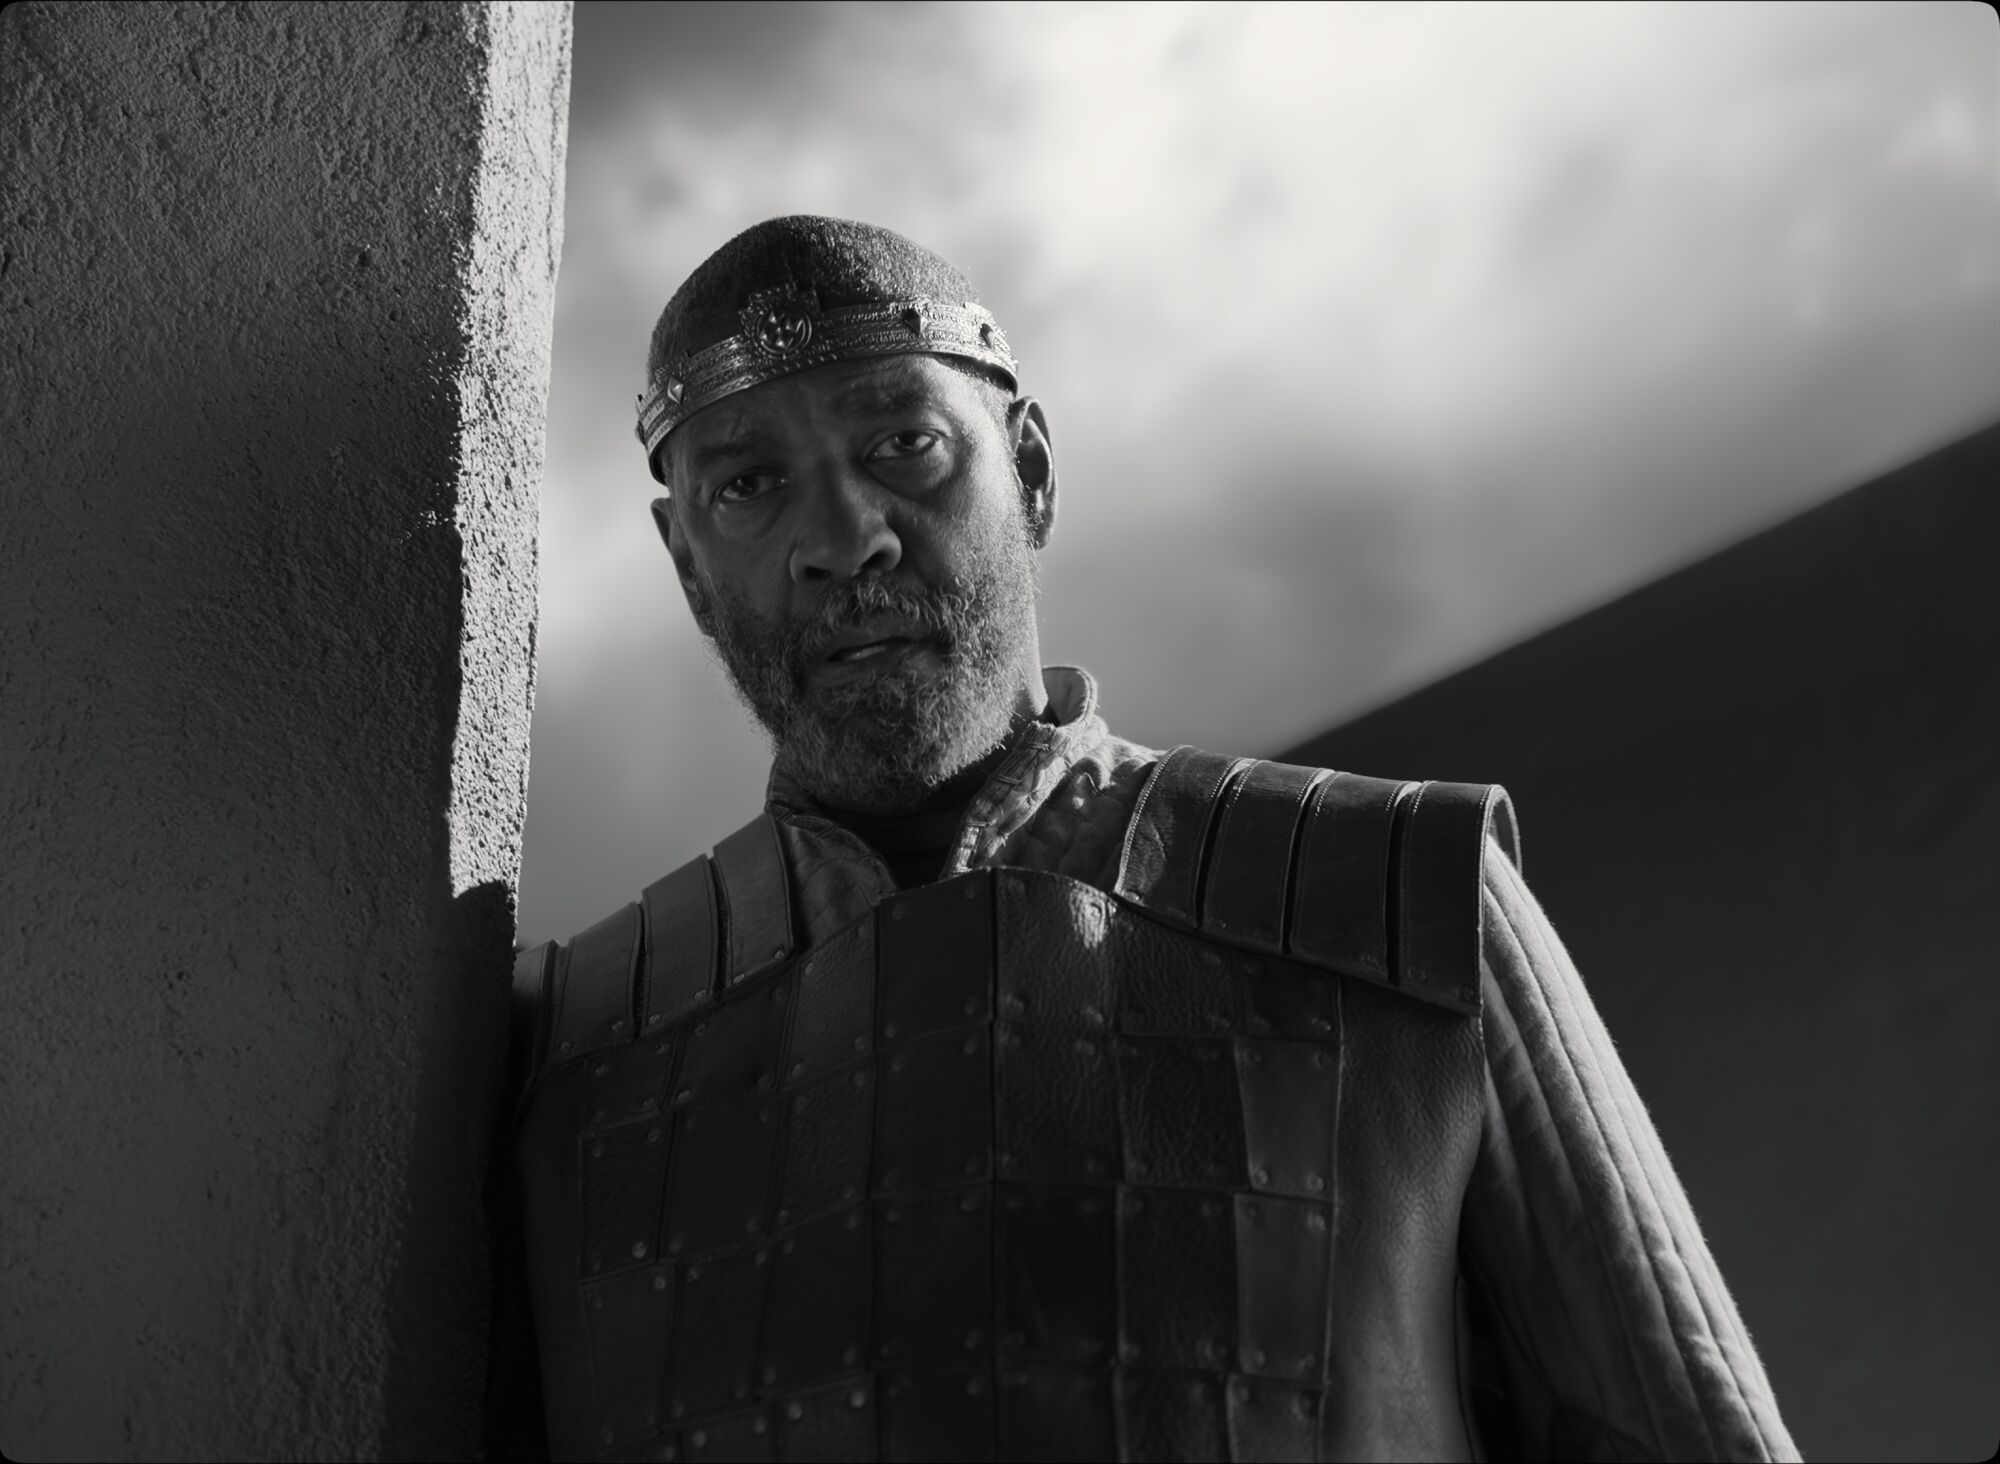 Denzel Washington in "The Tragedy of Macbeth."